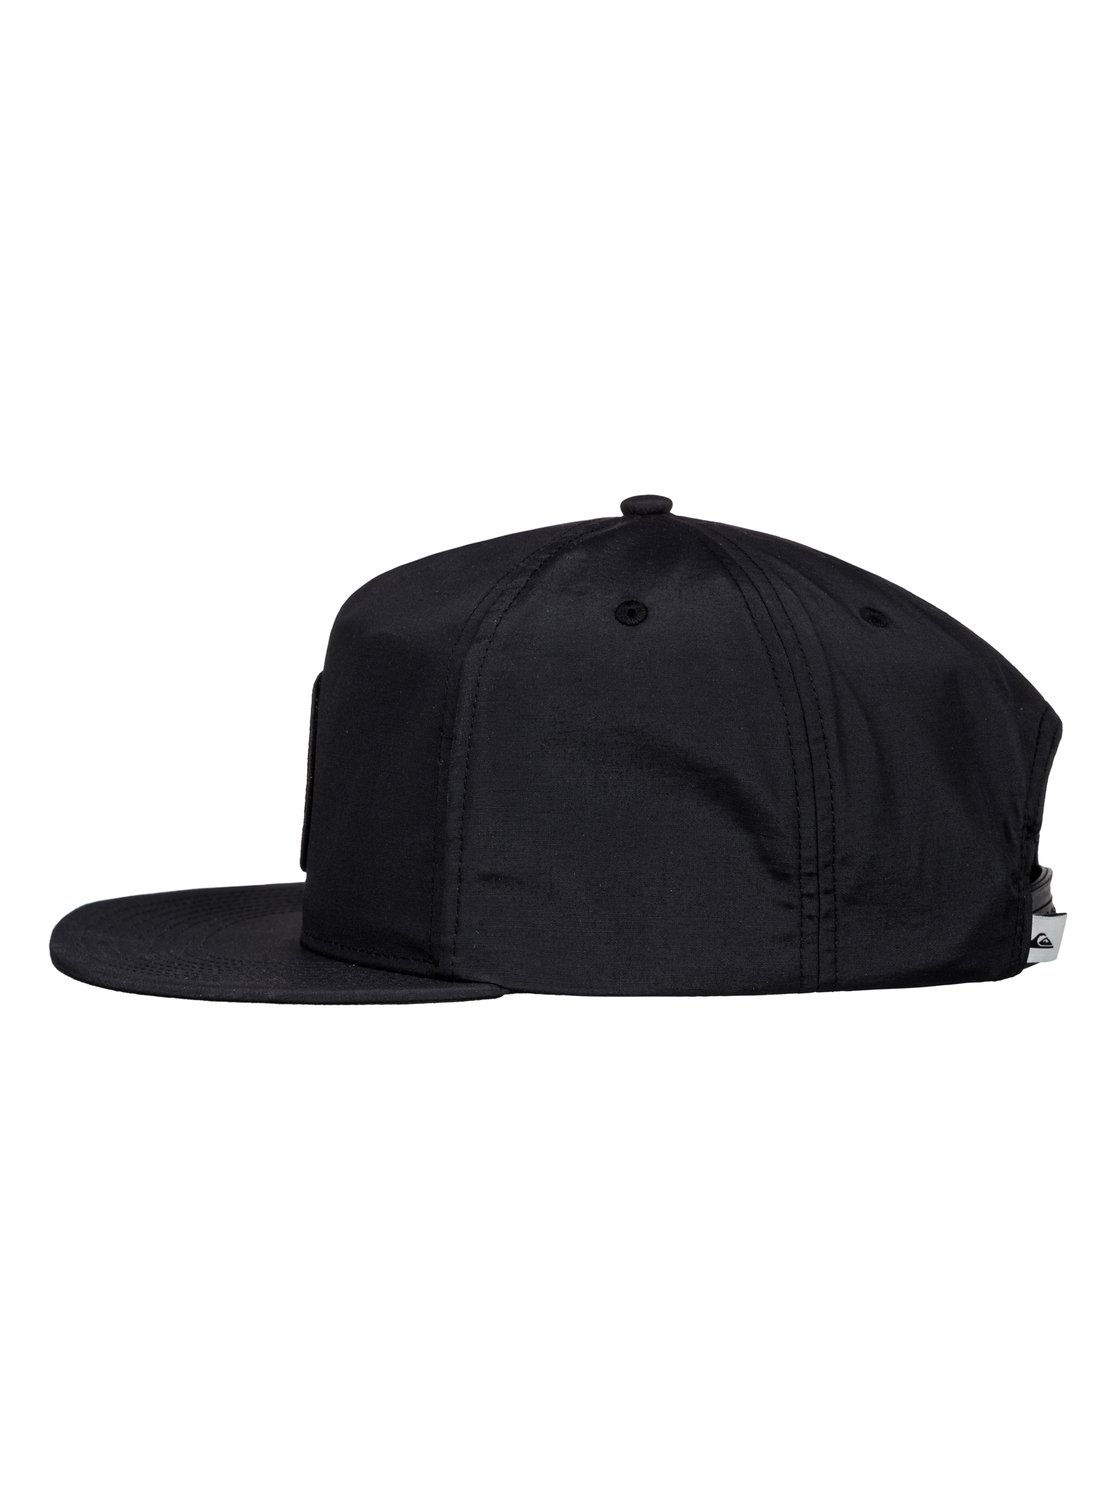 Bragnet Snapback Hat AQYHA03547 | Quiksilver